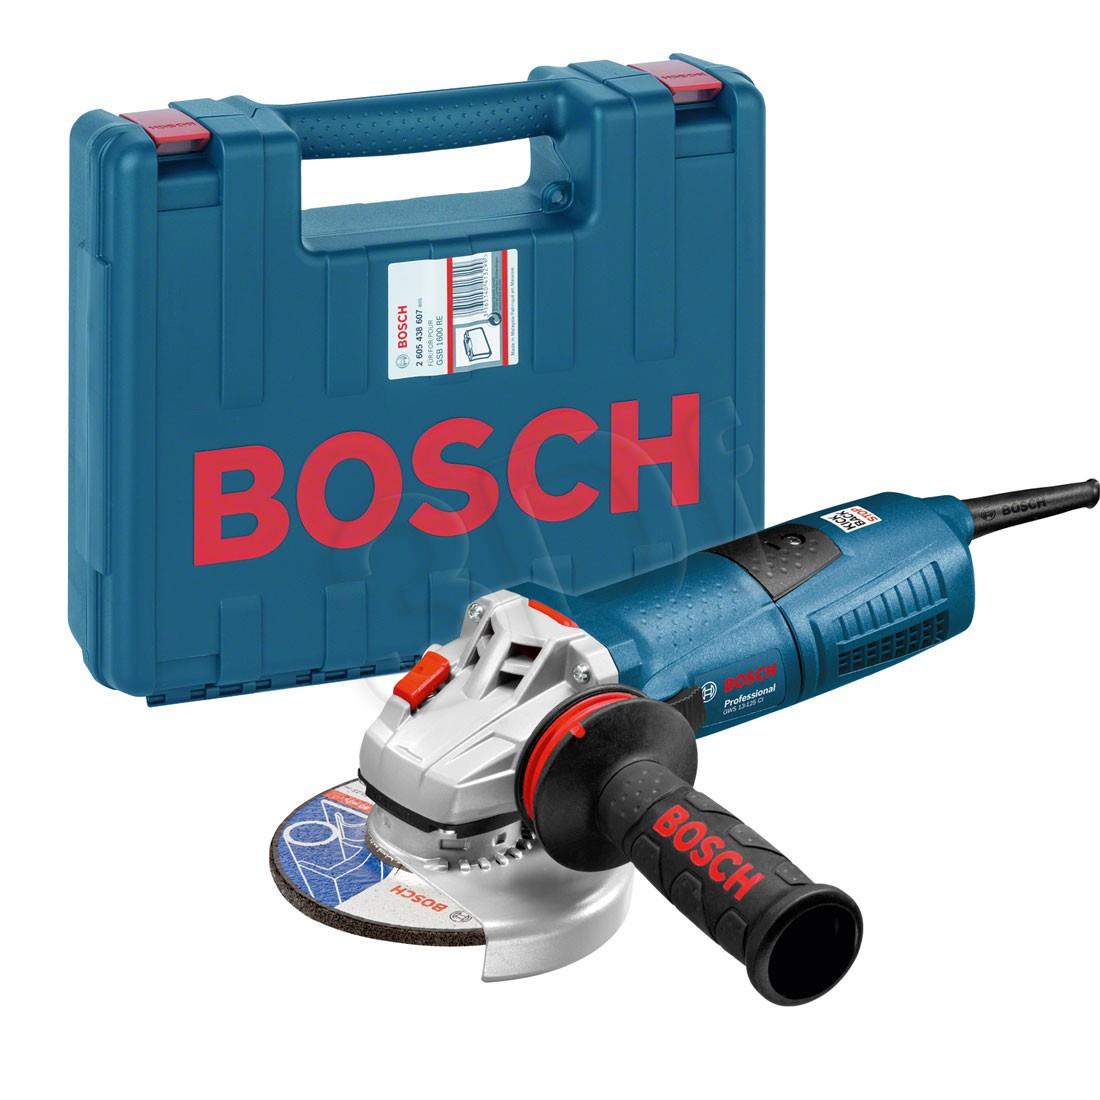 Ушм bosch gws. УШМ Bosch GWS 12-125 ci кейс, 1200 Вт, 125 мм. УШМ бош GWS 17-125 Cie. Кейс для УШМ Bosch 125. УШМ Bosch GWS 13-125 Cie.